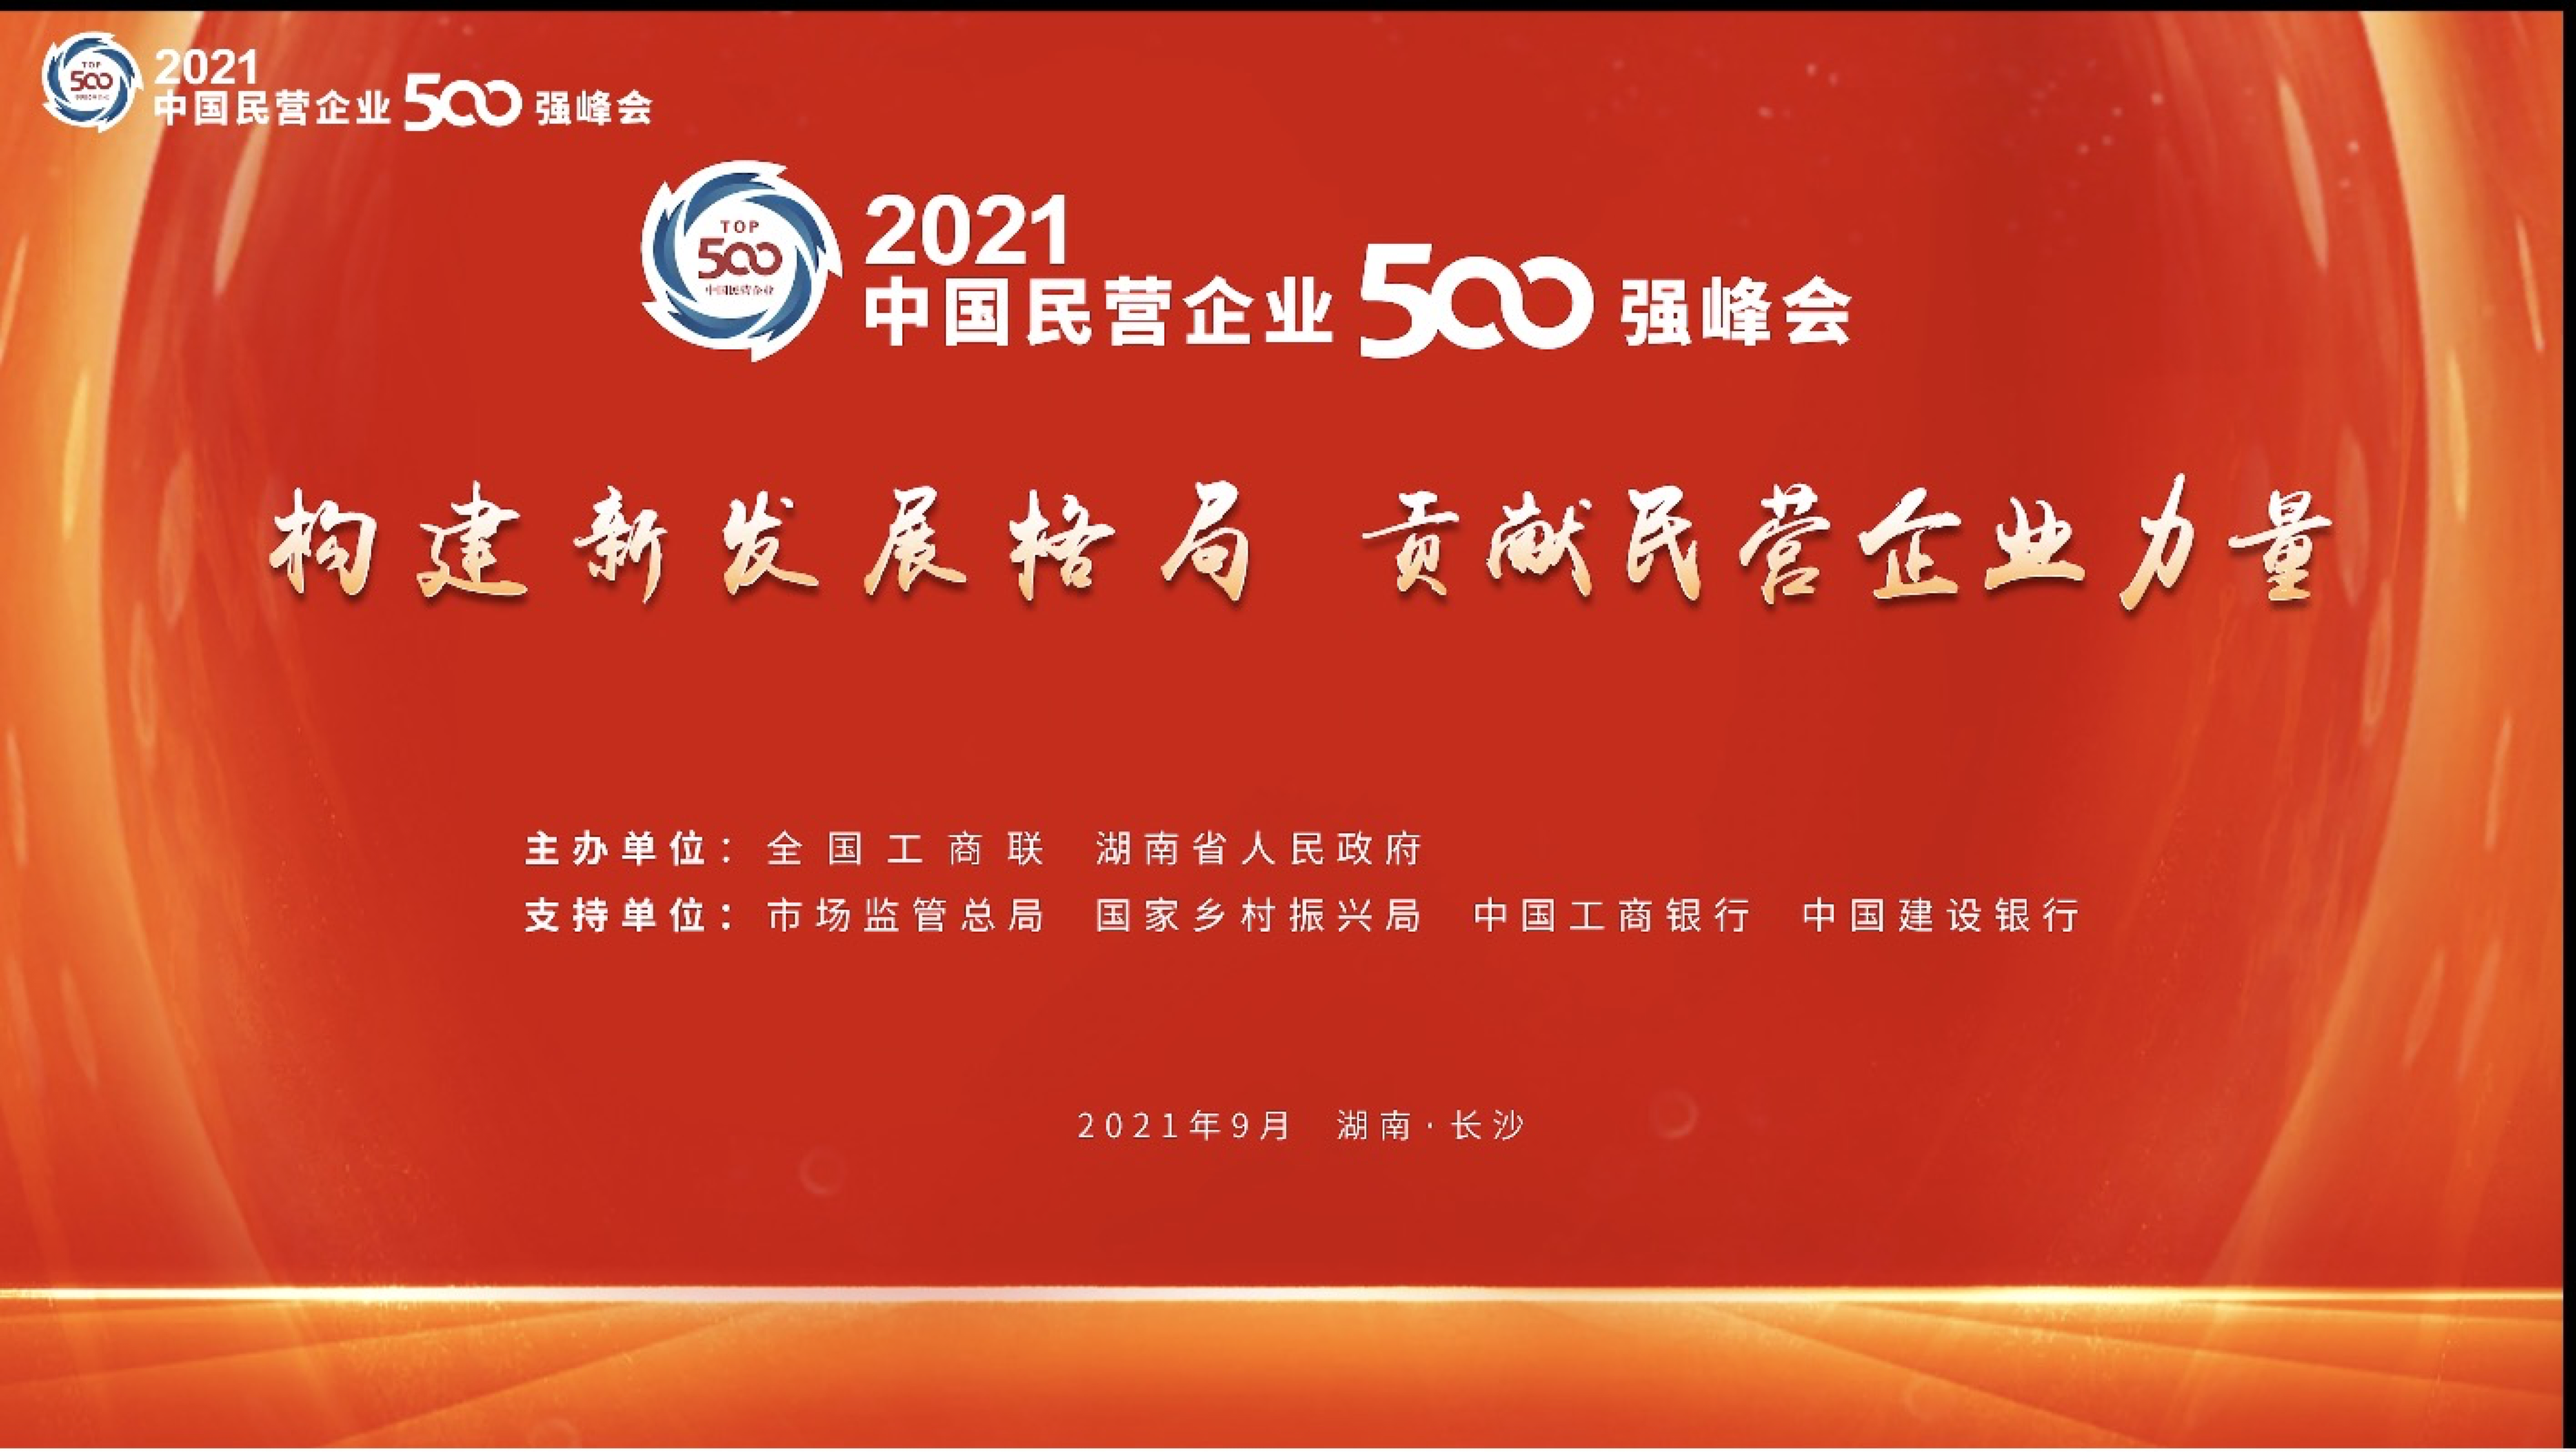 中国民企500强榜单发布 16家甬企入围 千亿级企业2家 